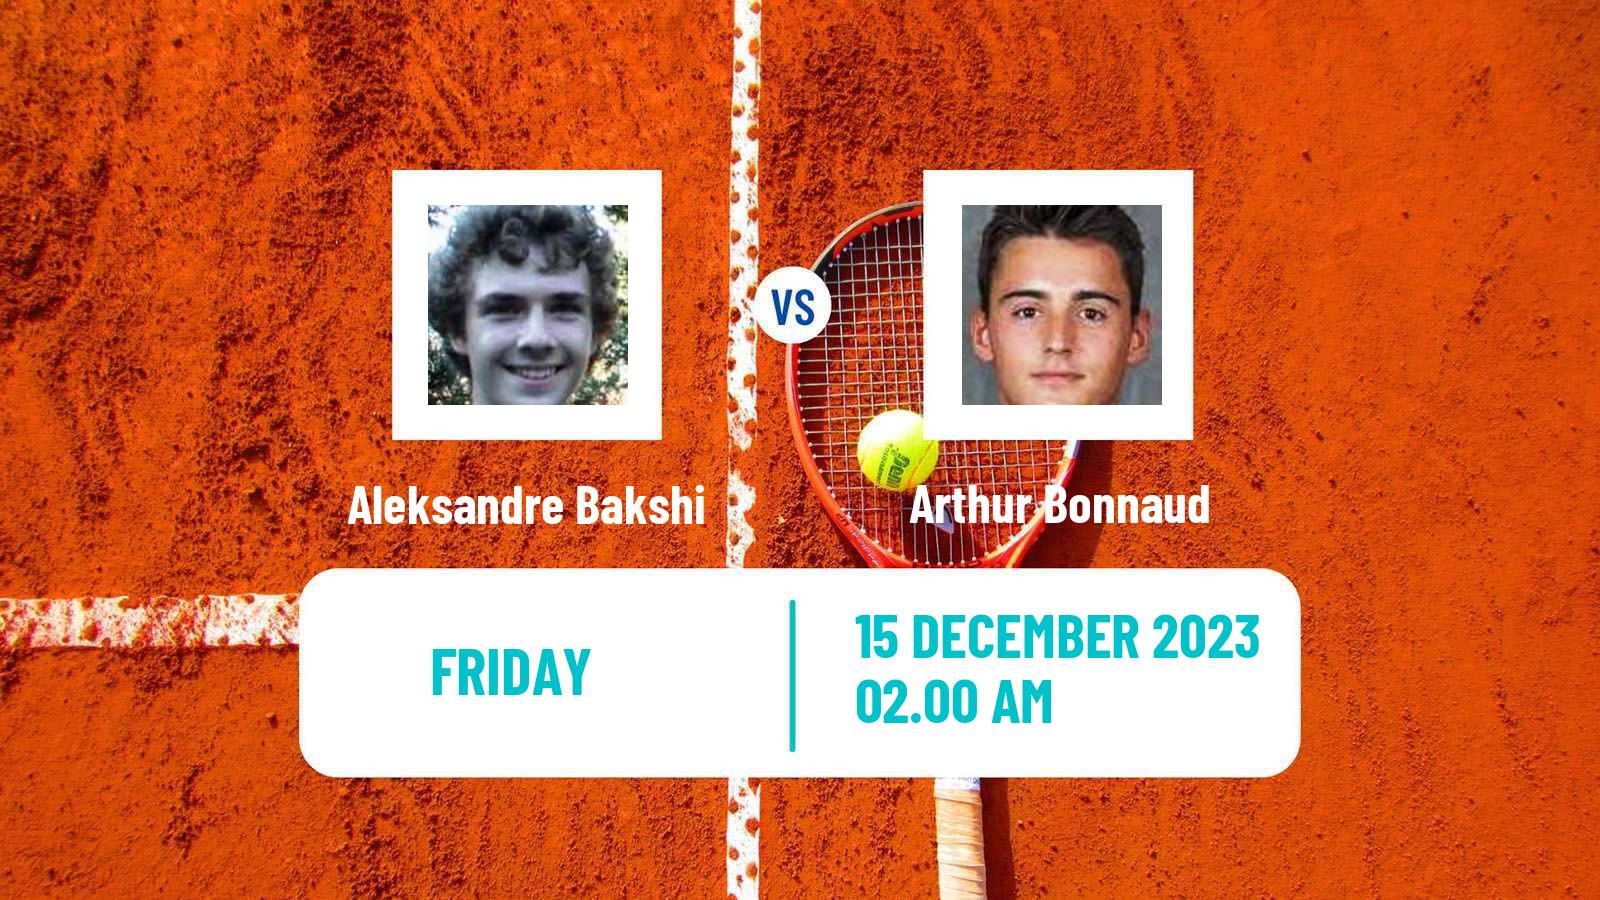 Tennis ITF M15 Zahra 3 Men Aleksandre Bakshi - Arthur Bonnaud